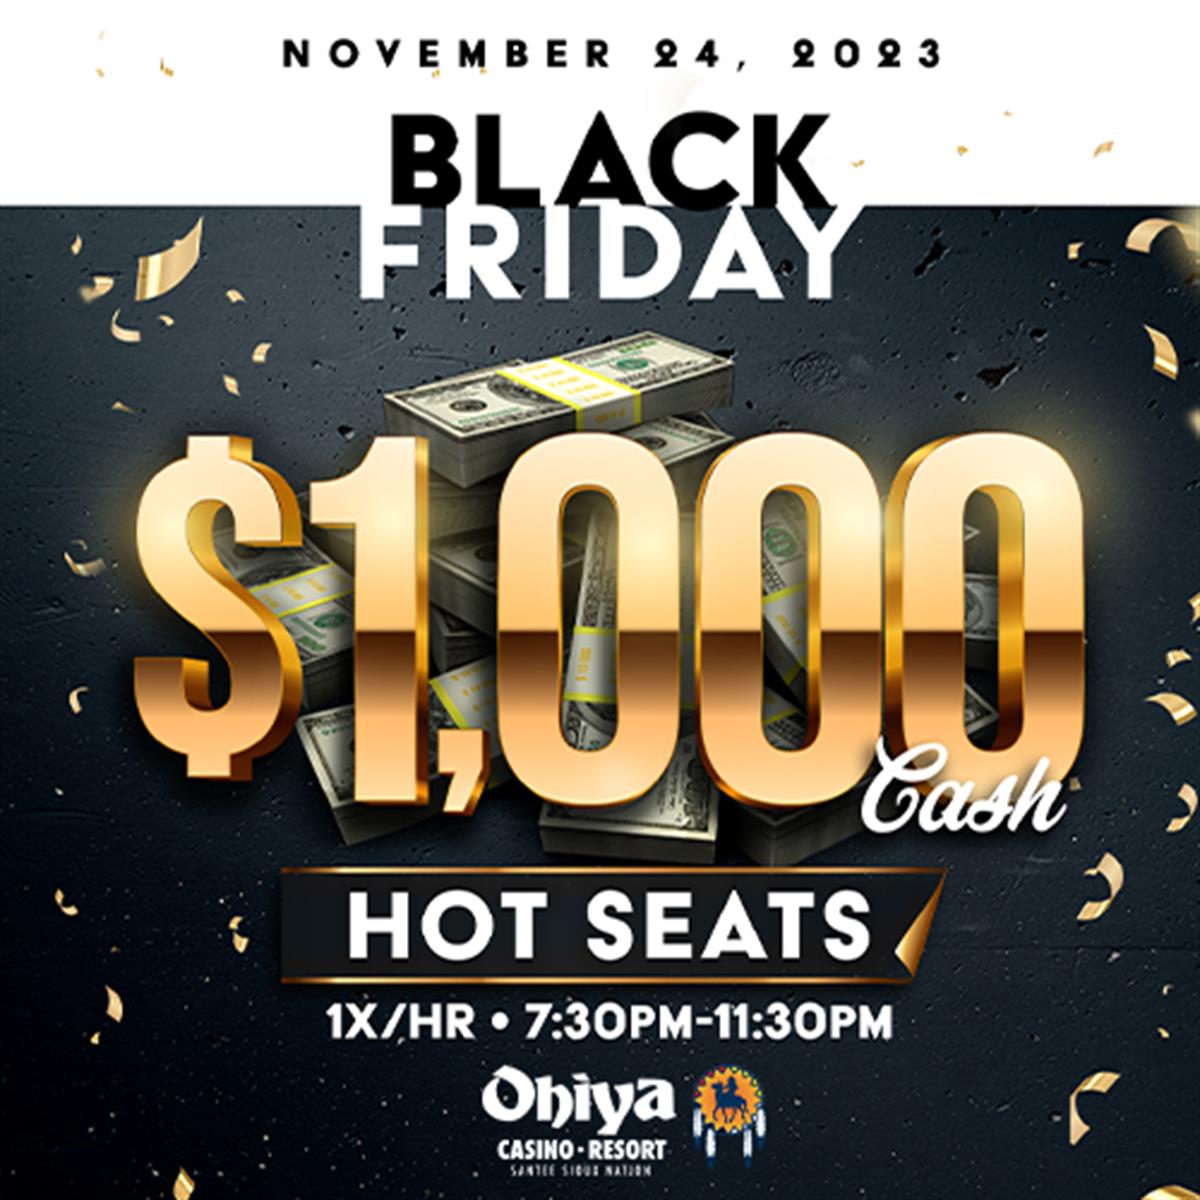 Ohiya Casino & Resort Black Friday Hot Seats Nov 24, 2023 Community